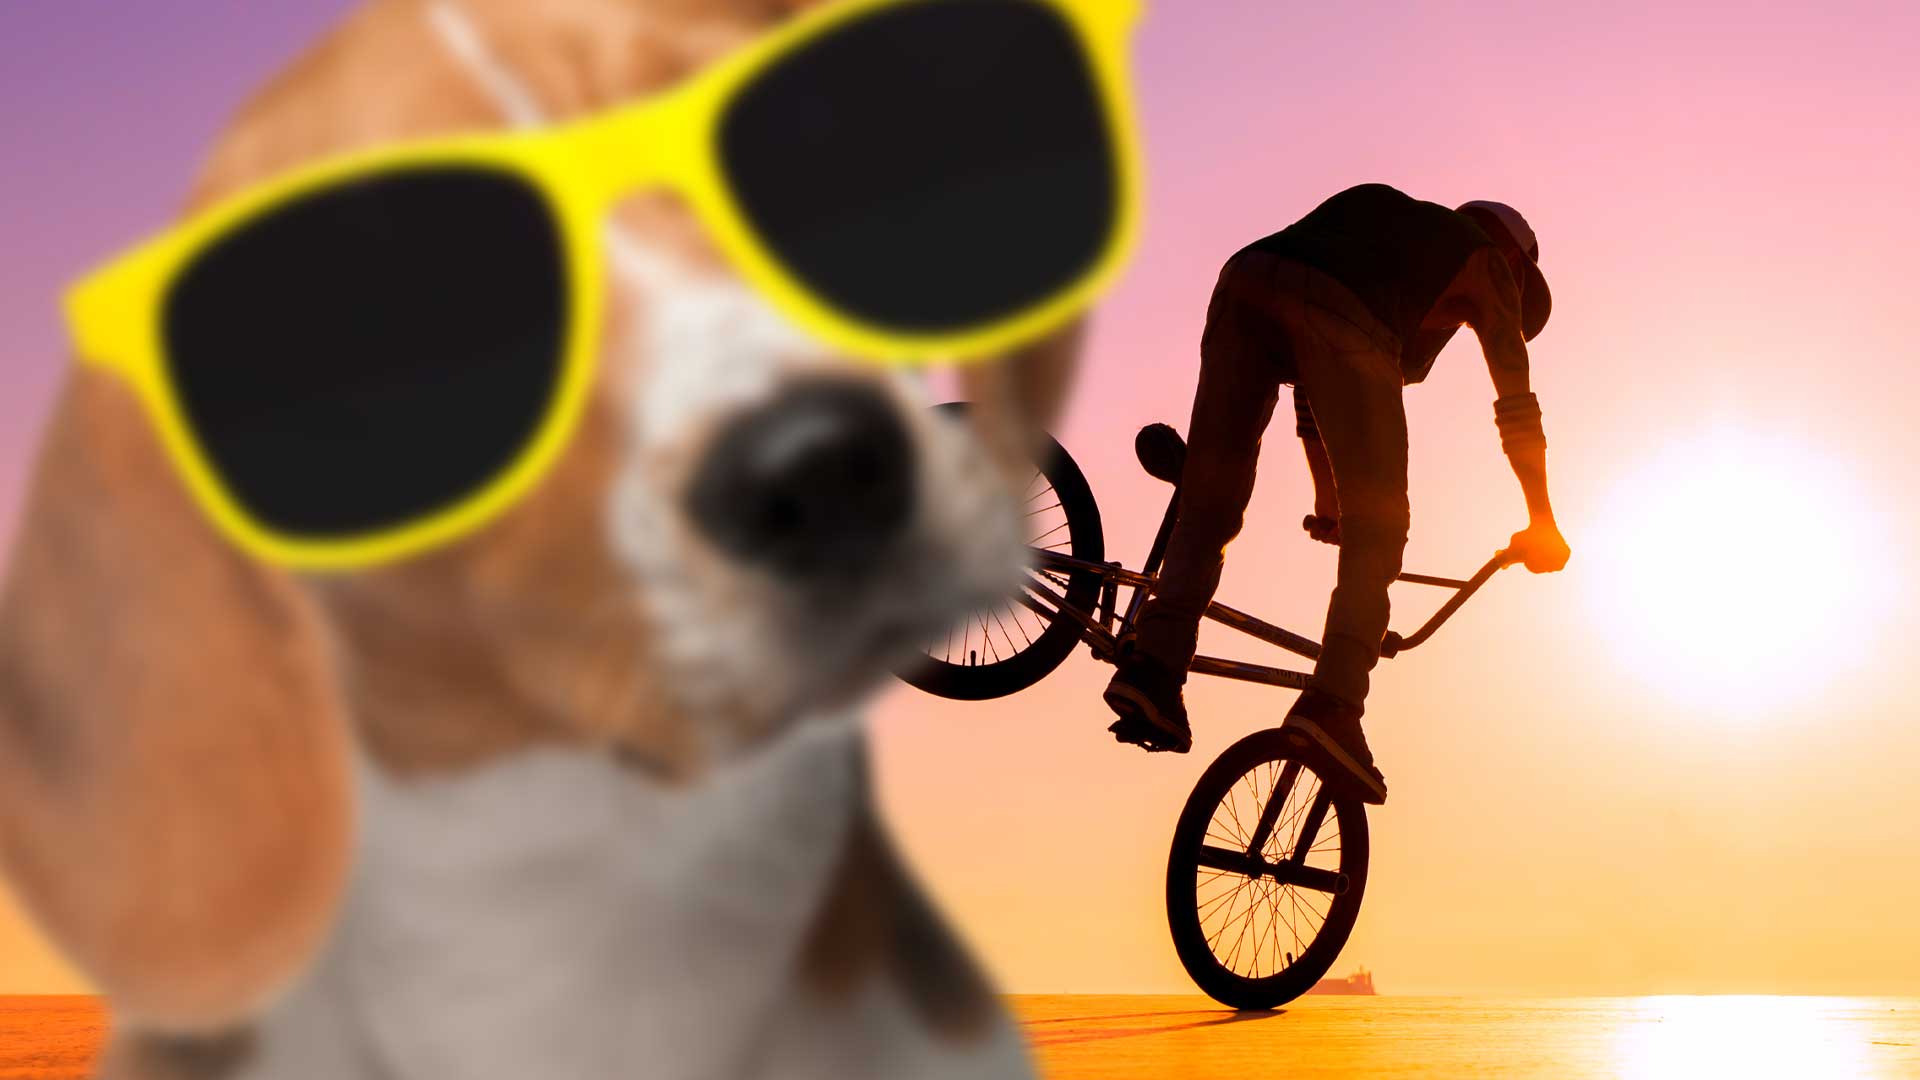 A dog and a BMX rider